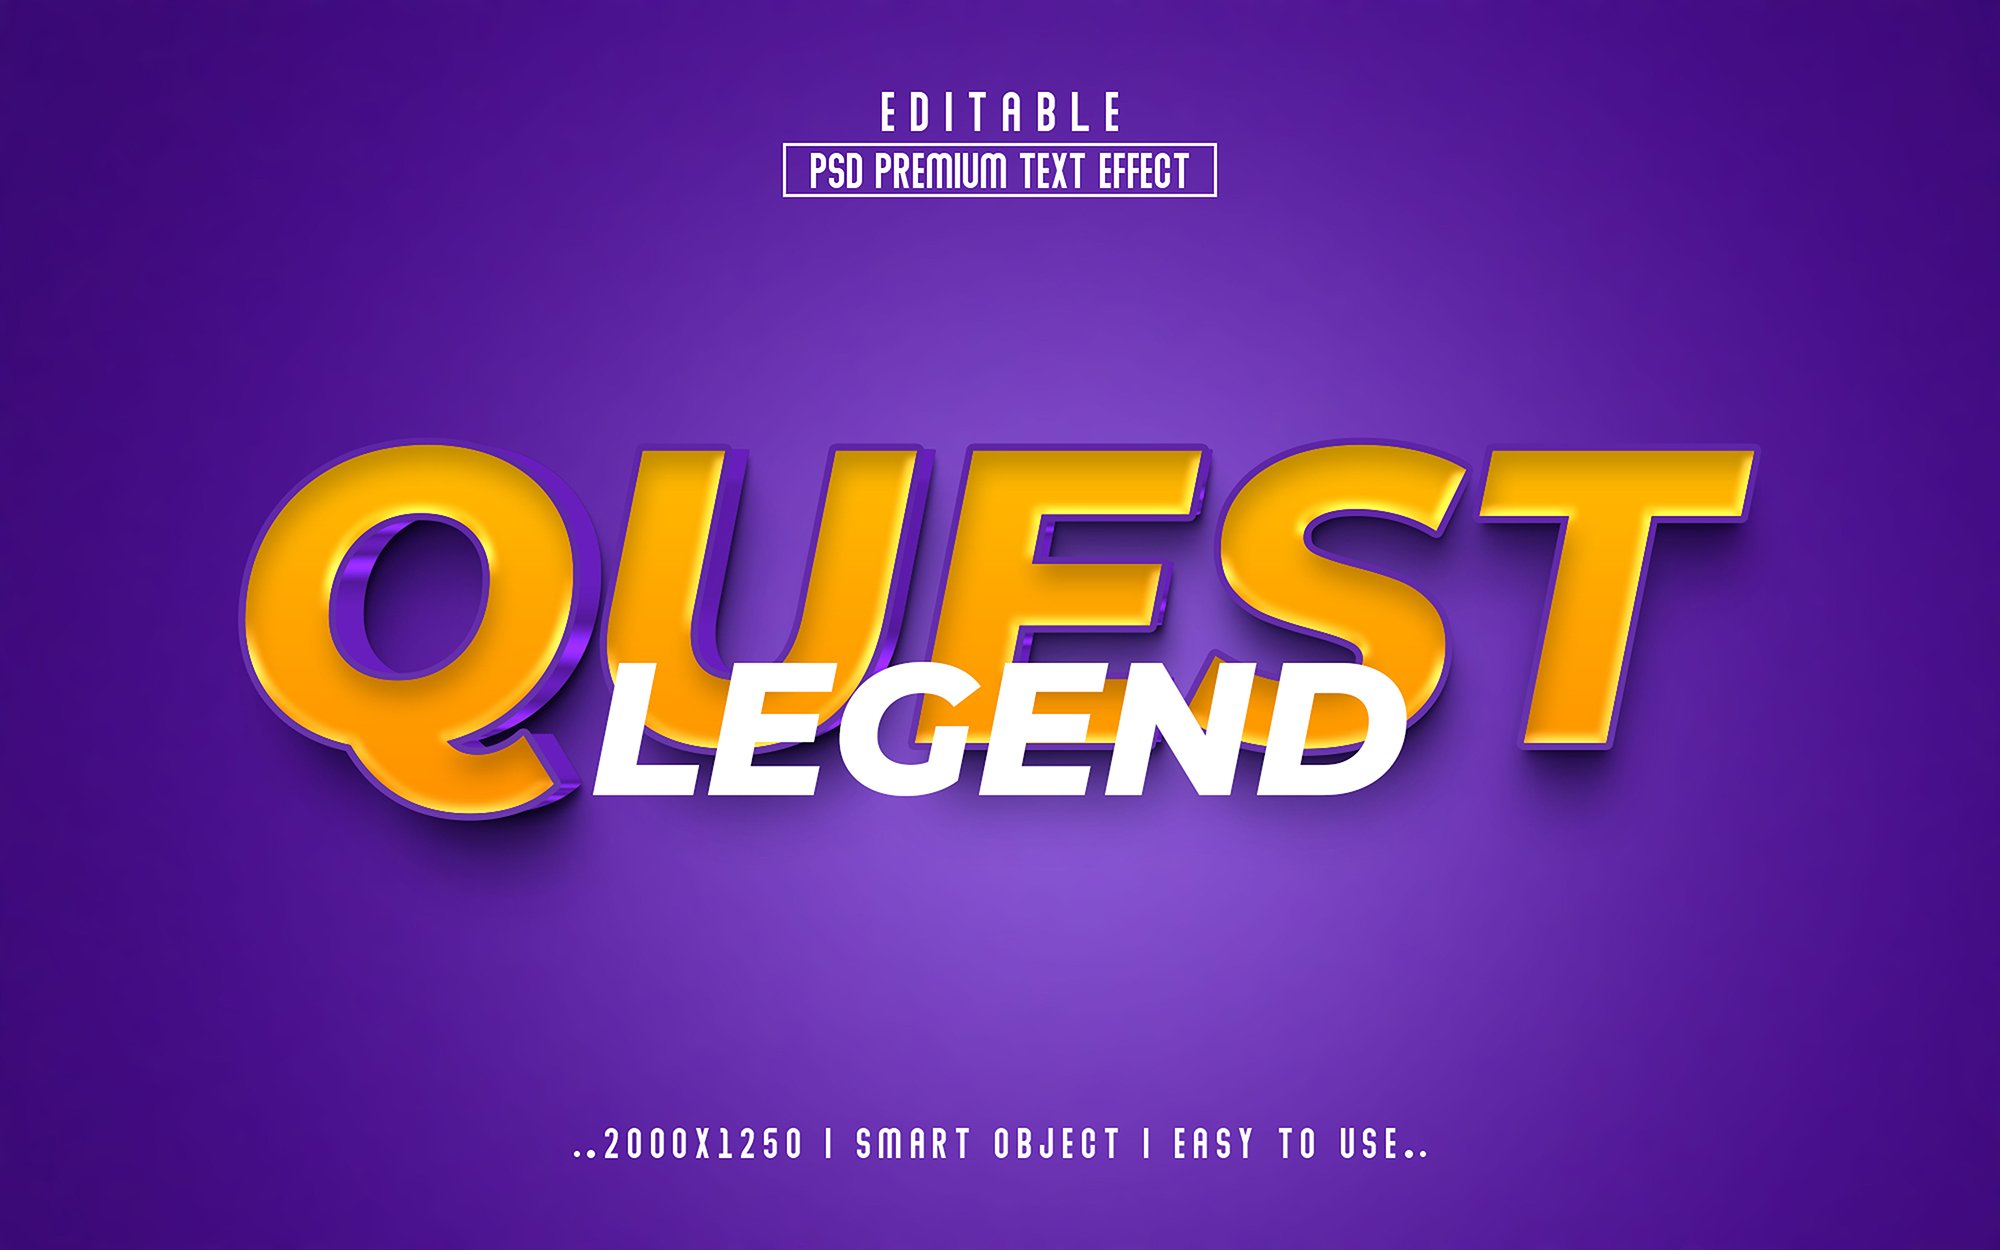 Legend quest 3D Editable psd Textcover image.